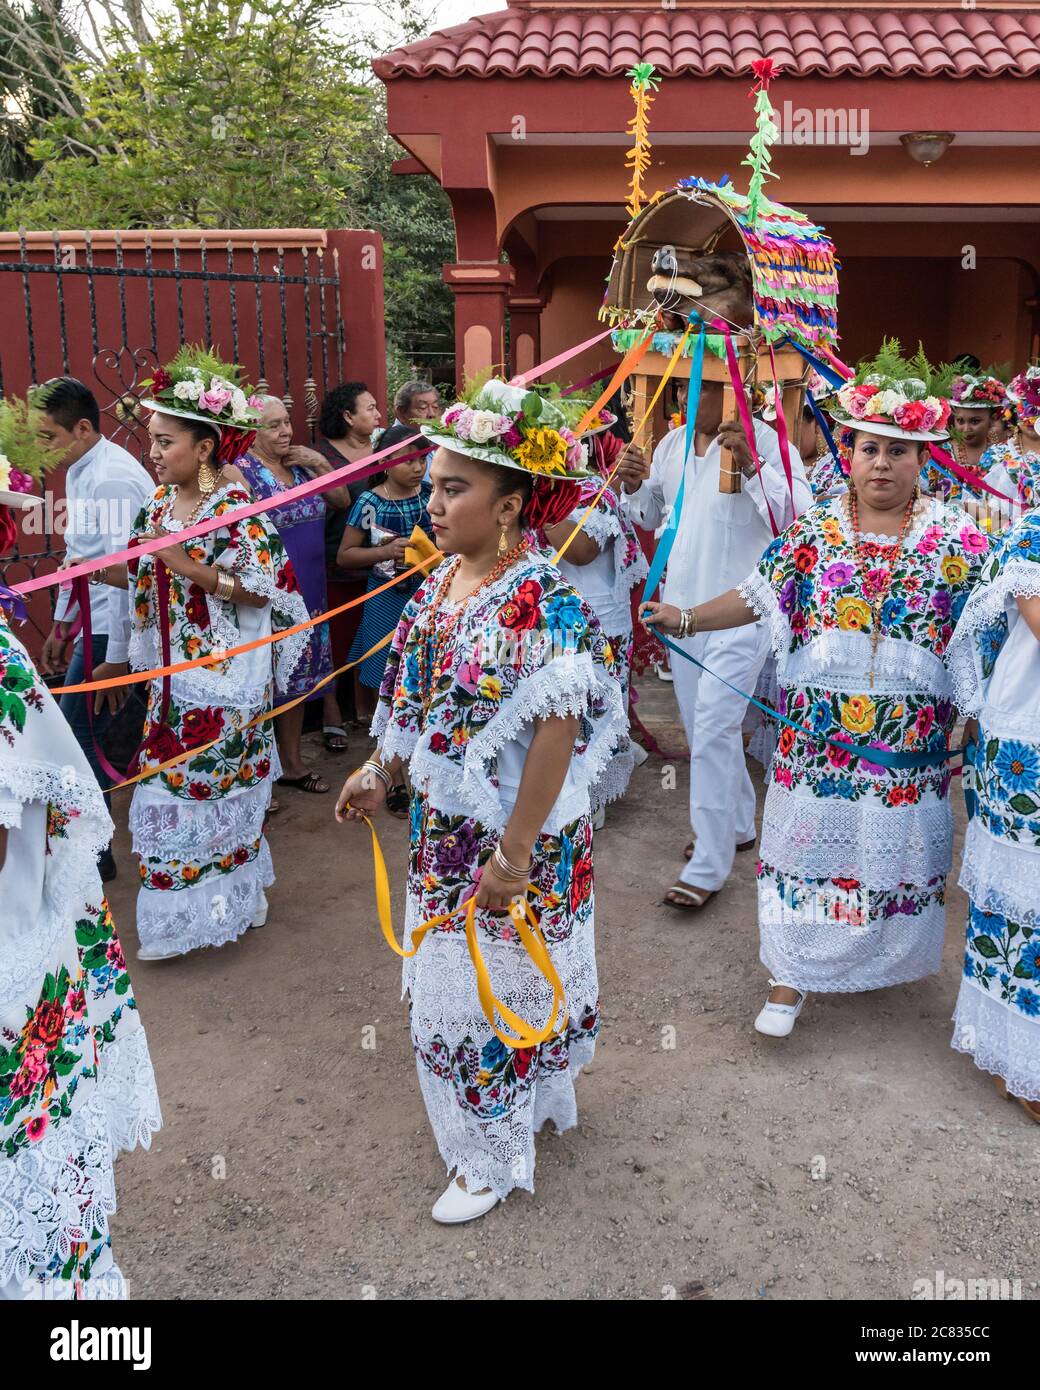 Frauen in traditionellen festlichen gestickten Huipils und geblümten Hüten bereiten sich für den Tanz des Schweins Kopf und der Türkei, oder Baile de la cabeza del Stockfoto